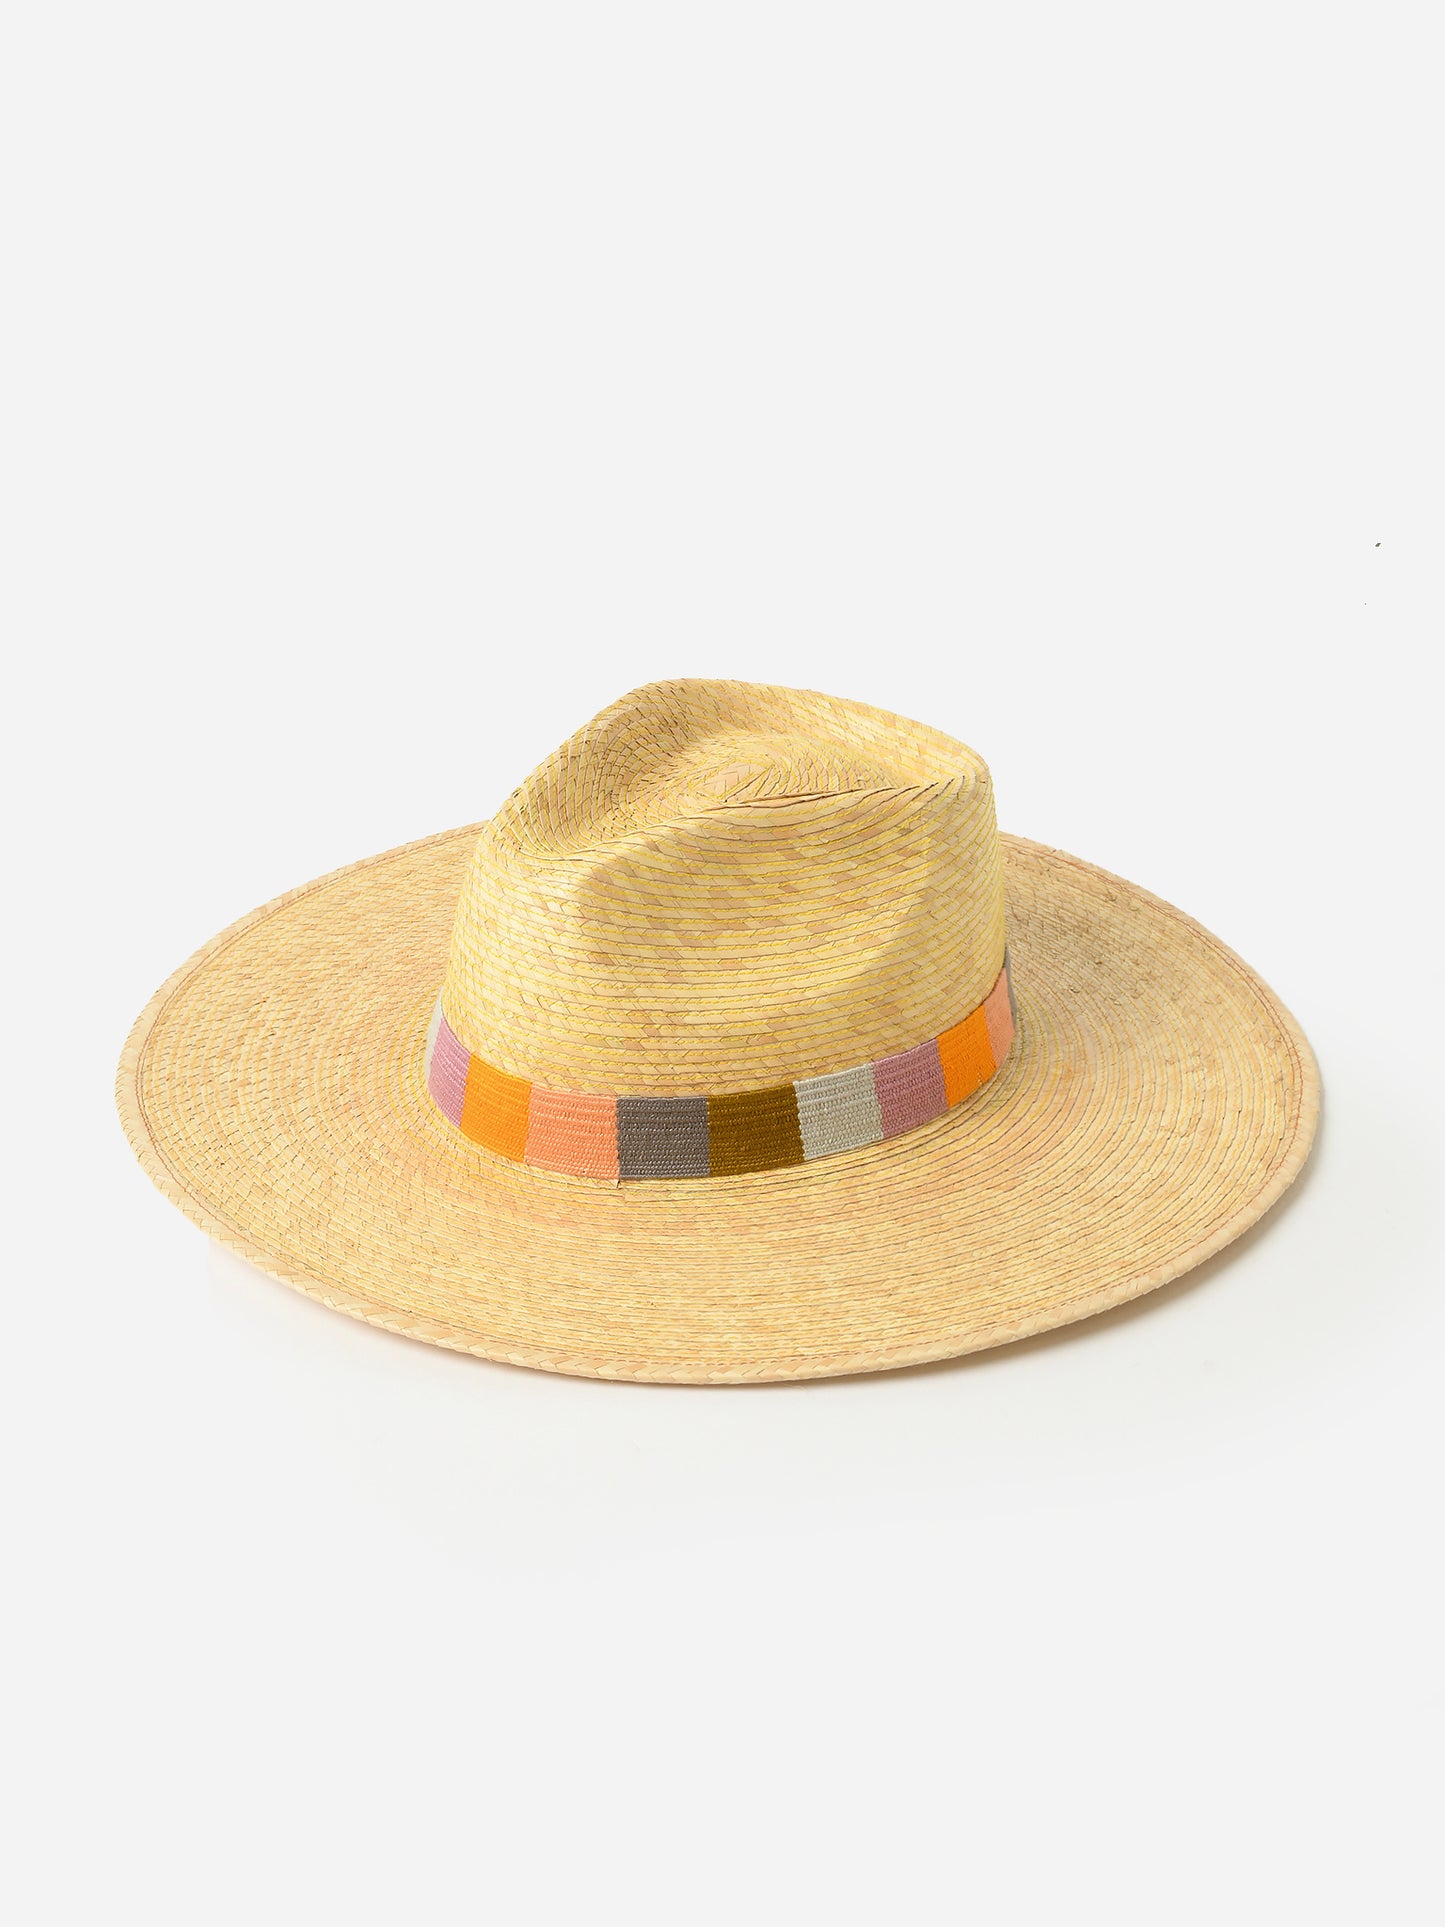 Sunshine Tienda Women's Pastel Palm Hat